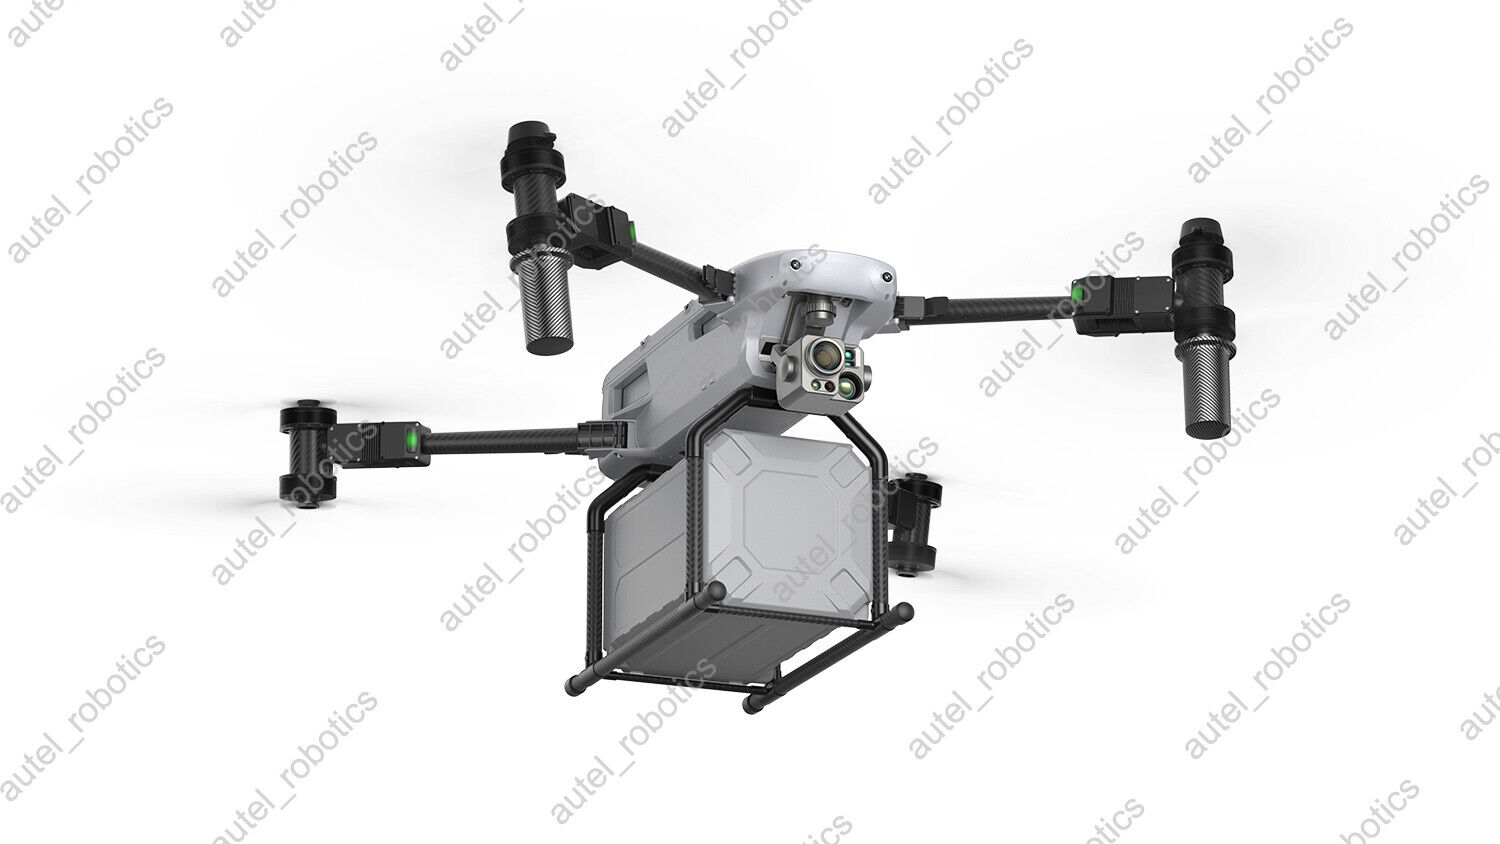 Autel Titan enterprise drone